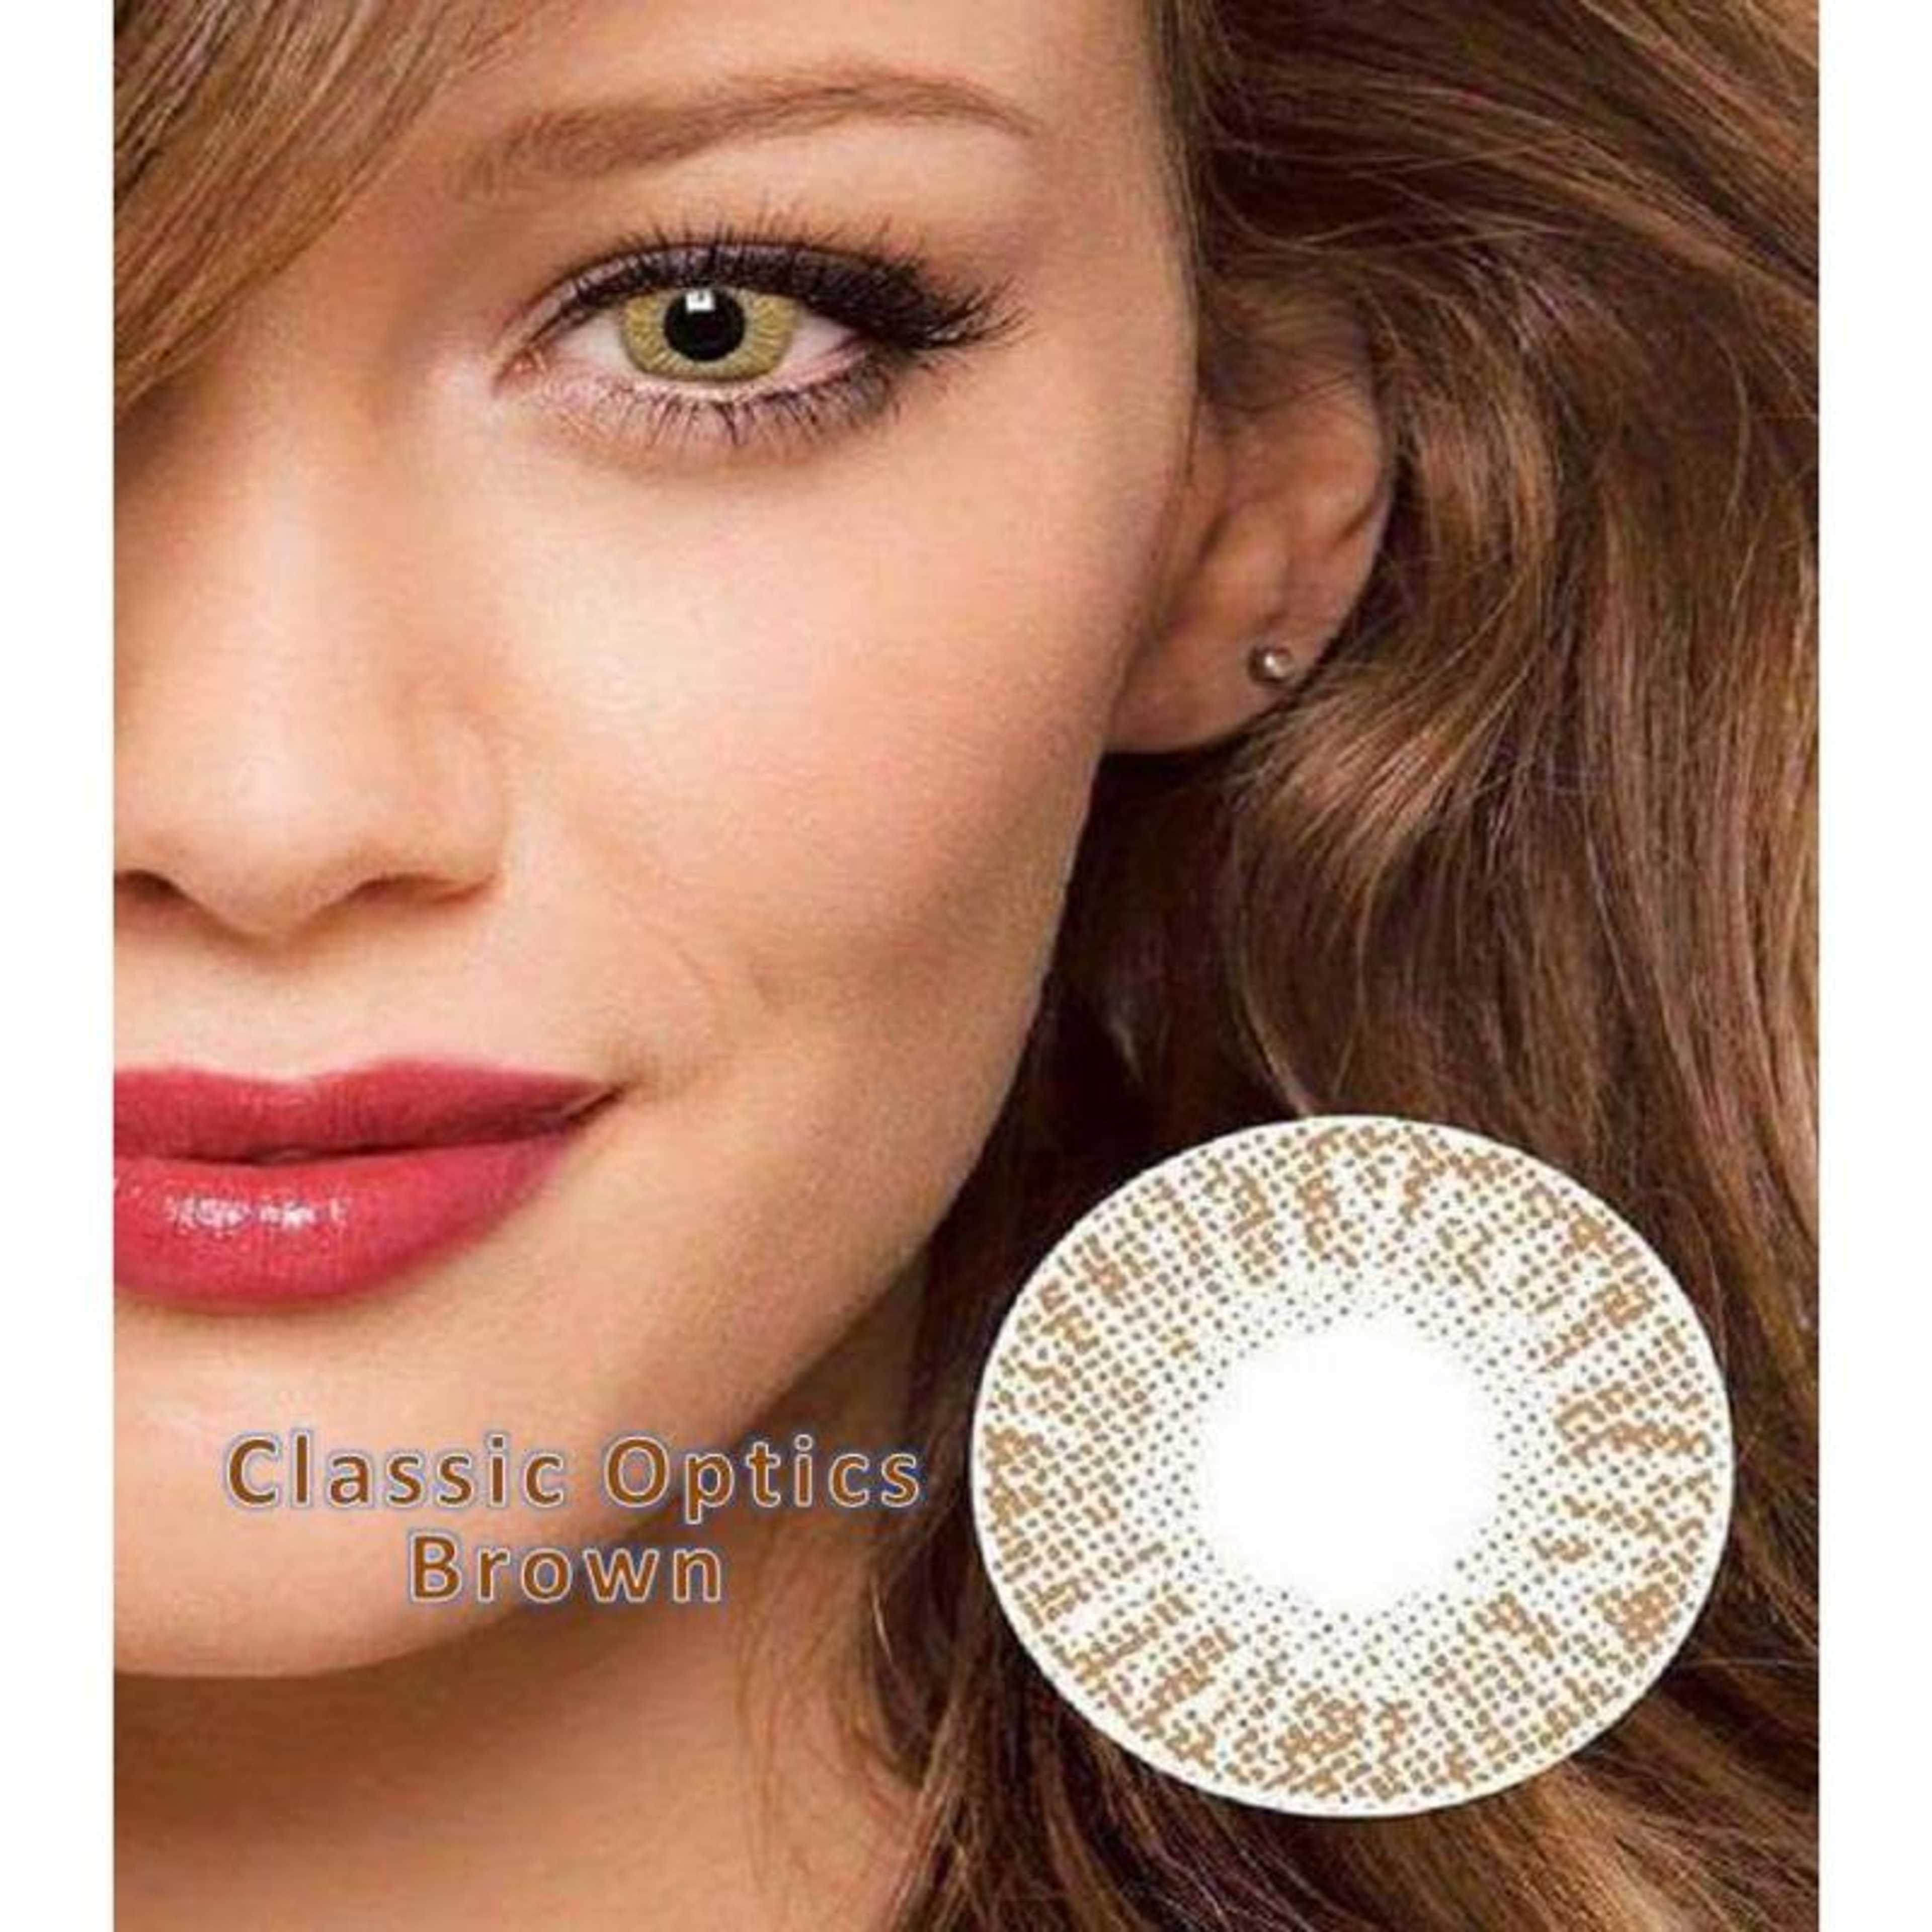 Brown Single shade Contact Lenses-Bridal Colors